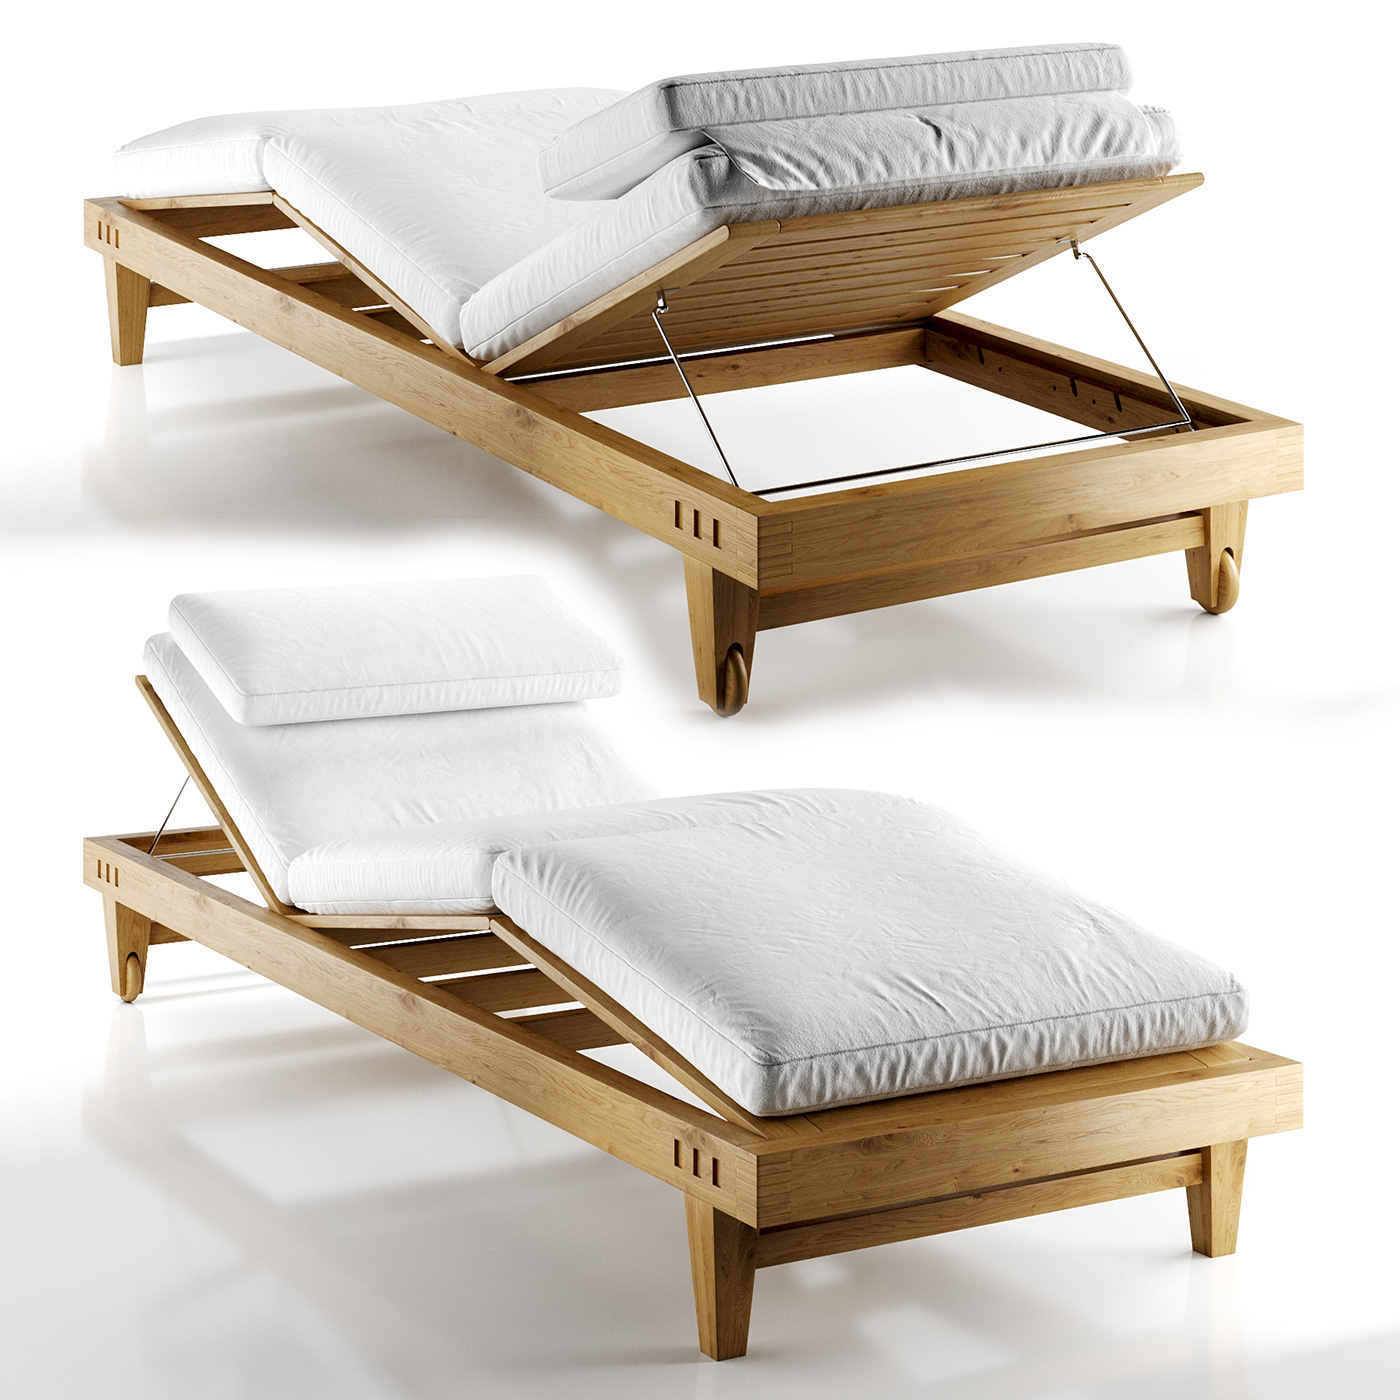 3d design 3d furniture 3D model 3d modeling 3dsmax CGI model corona render  furniture design  furniture modeling product design 